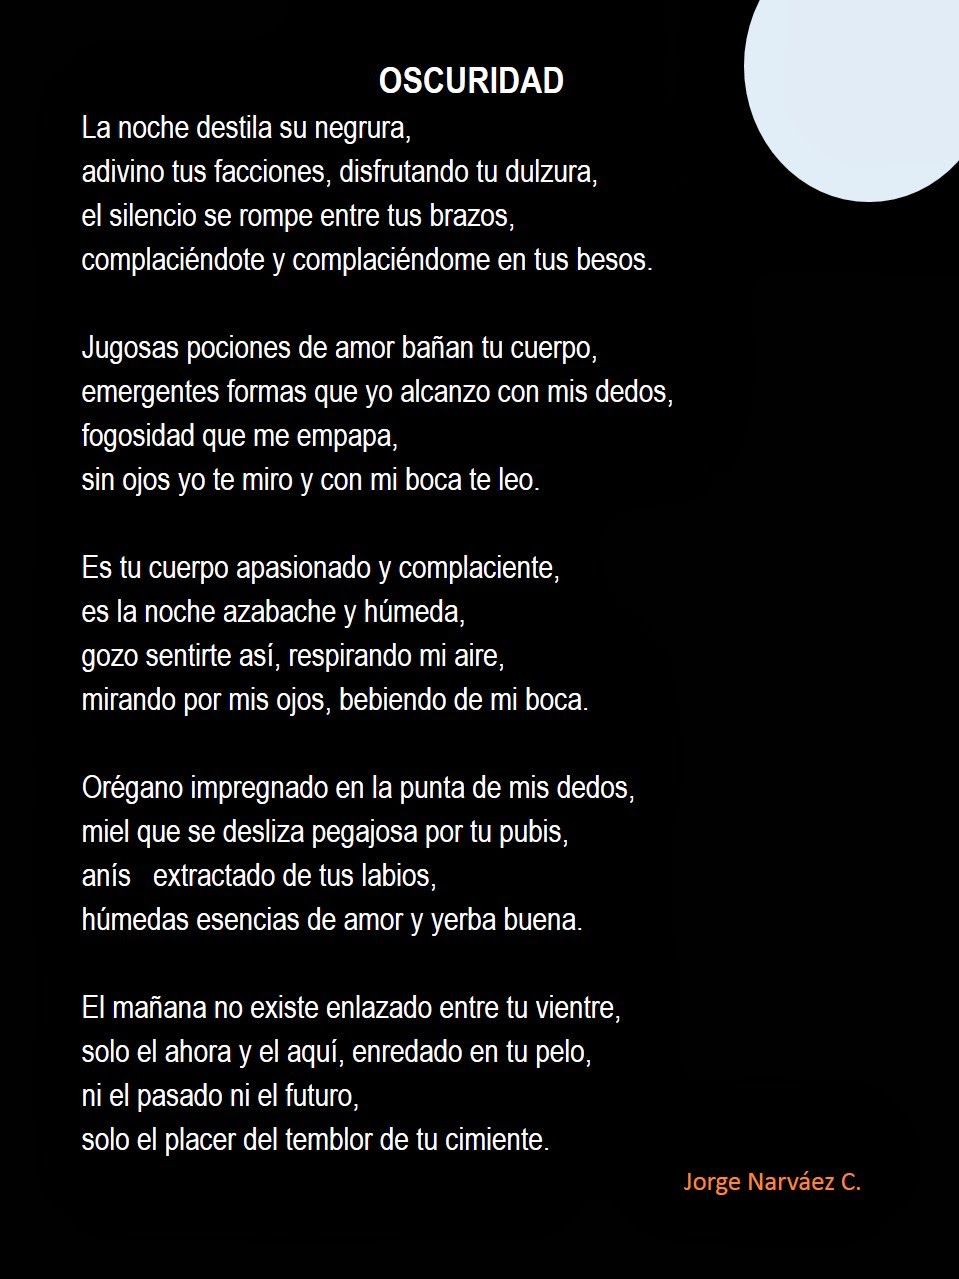 La oscuridad hecha versos: Un poema a la noche que encanta el alma